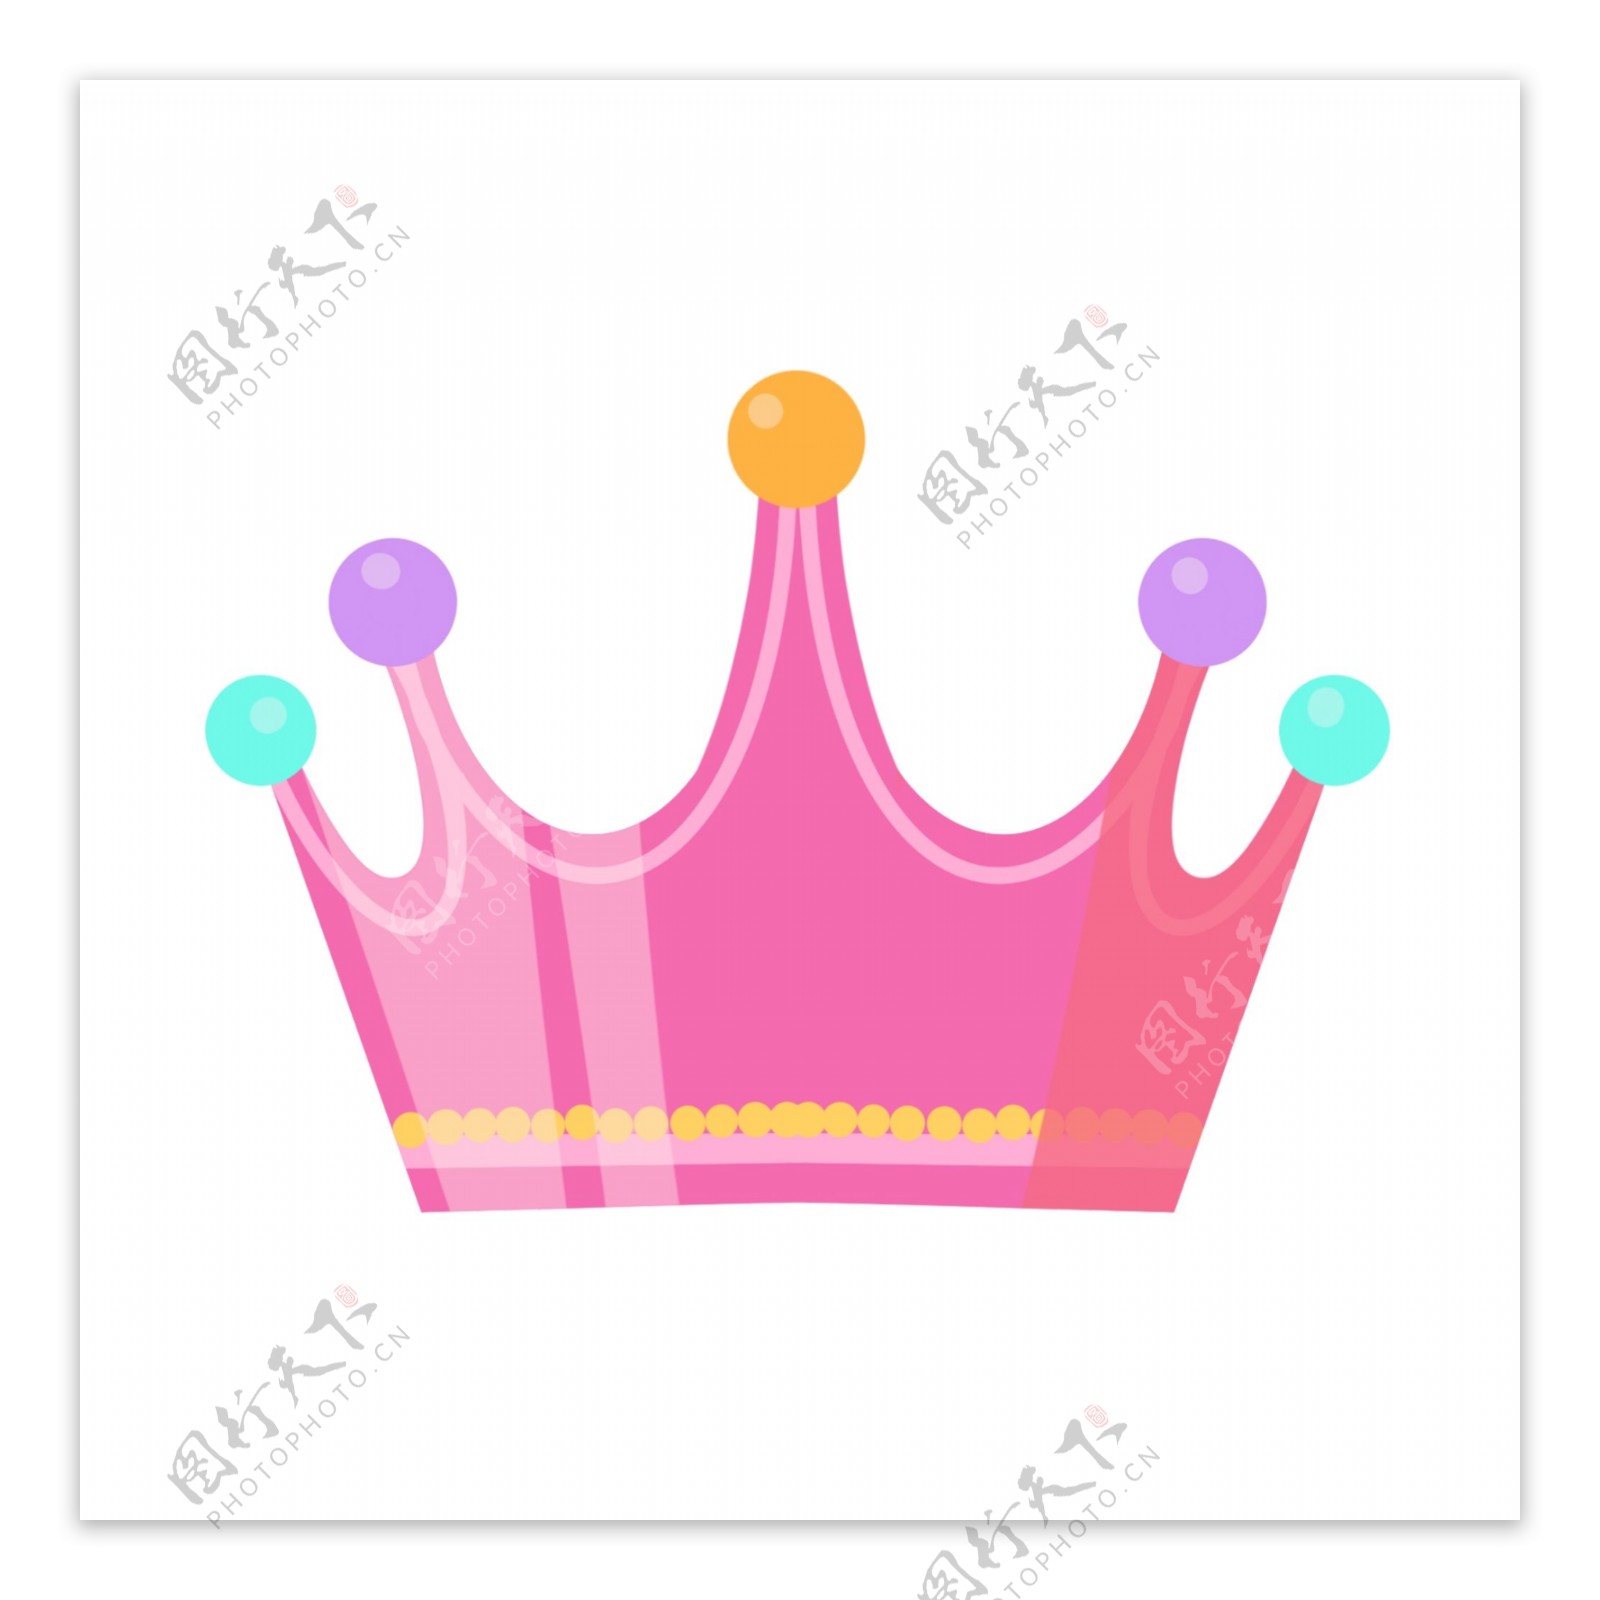 粉色立体皇冠